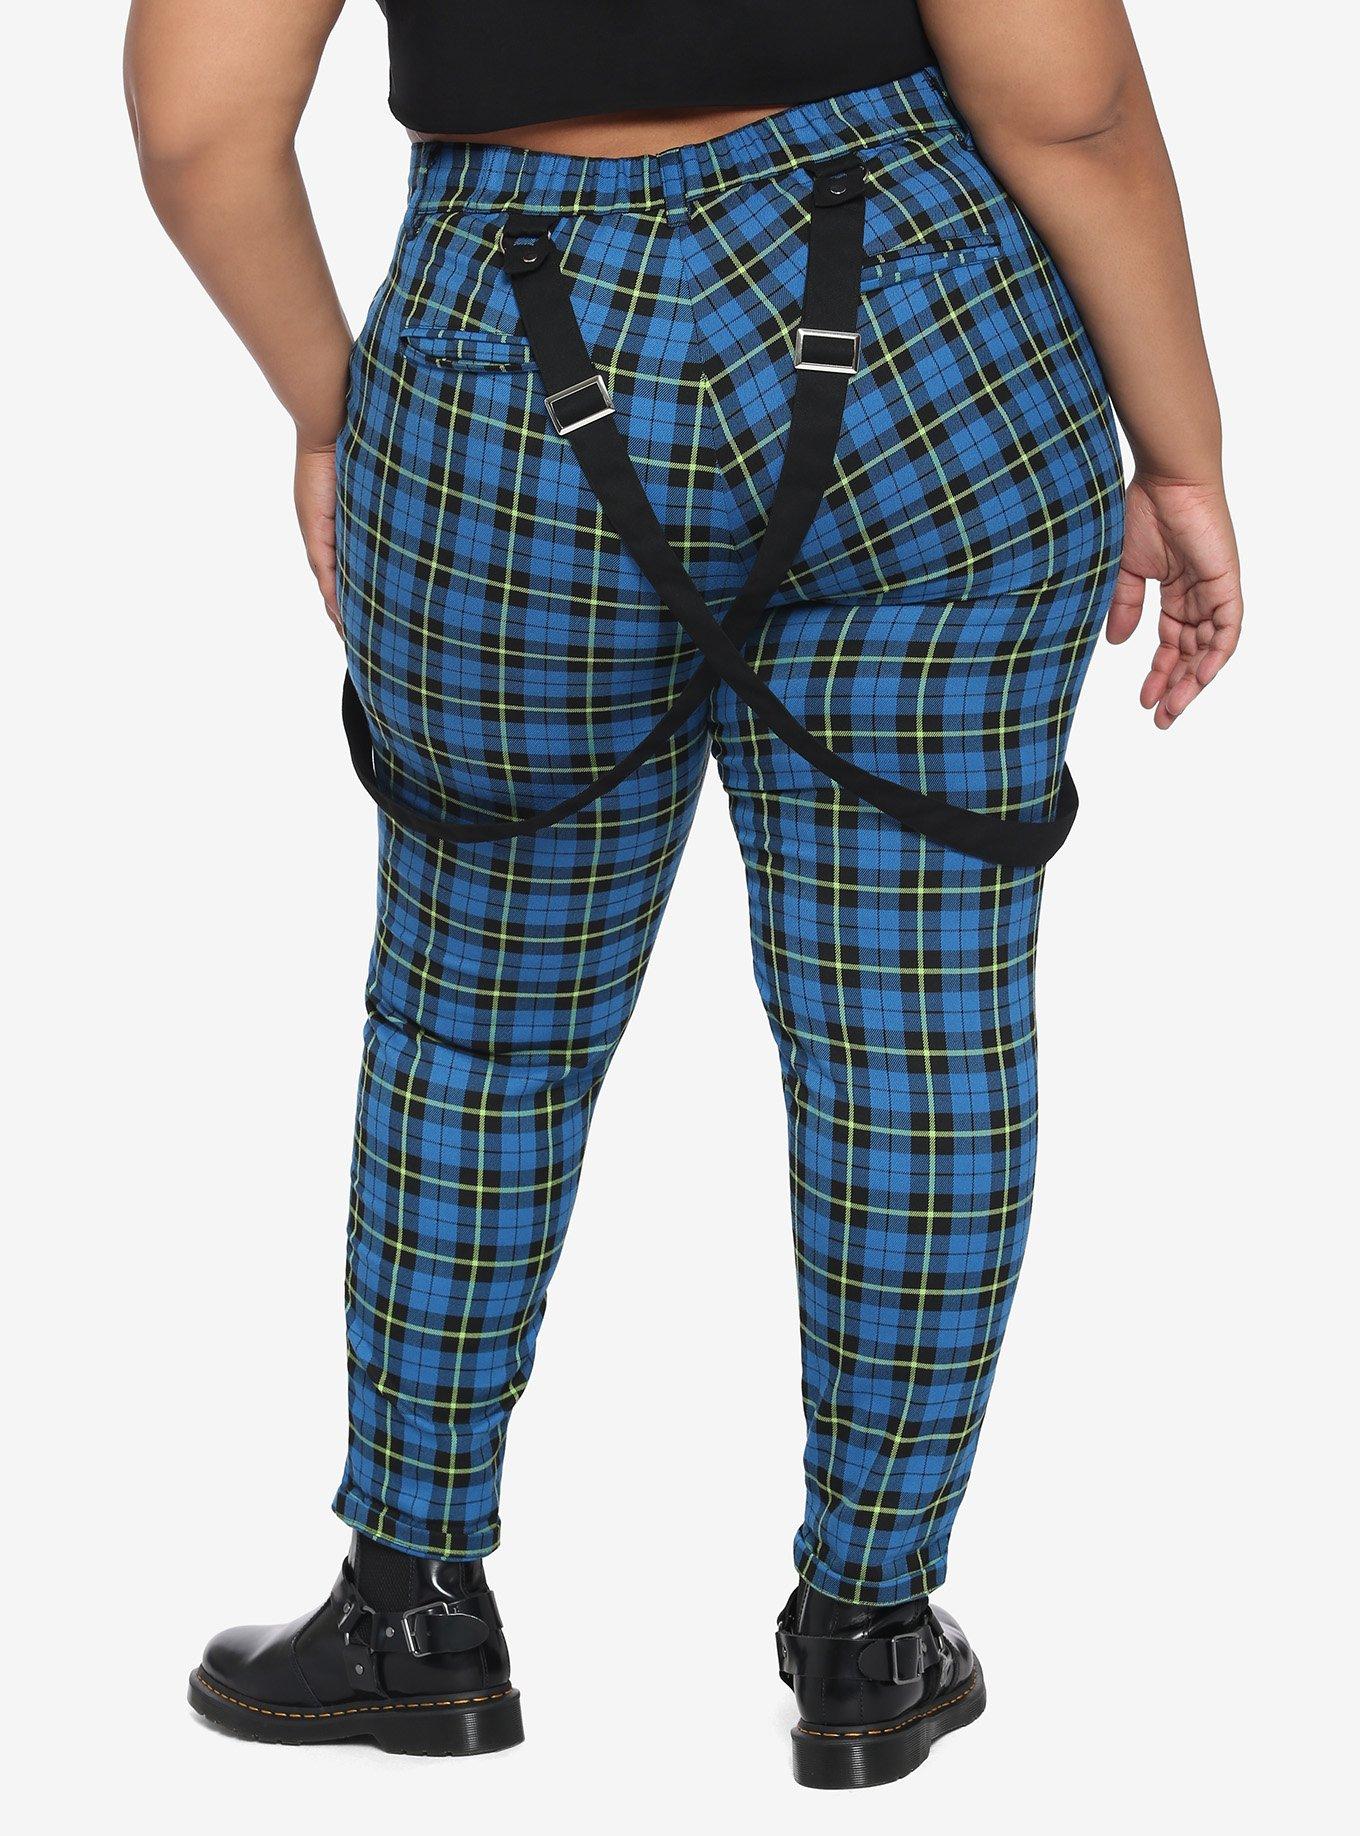 Blue & Green Plaid Suspender Pants Plus Size, PLAID, alternate